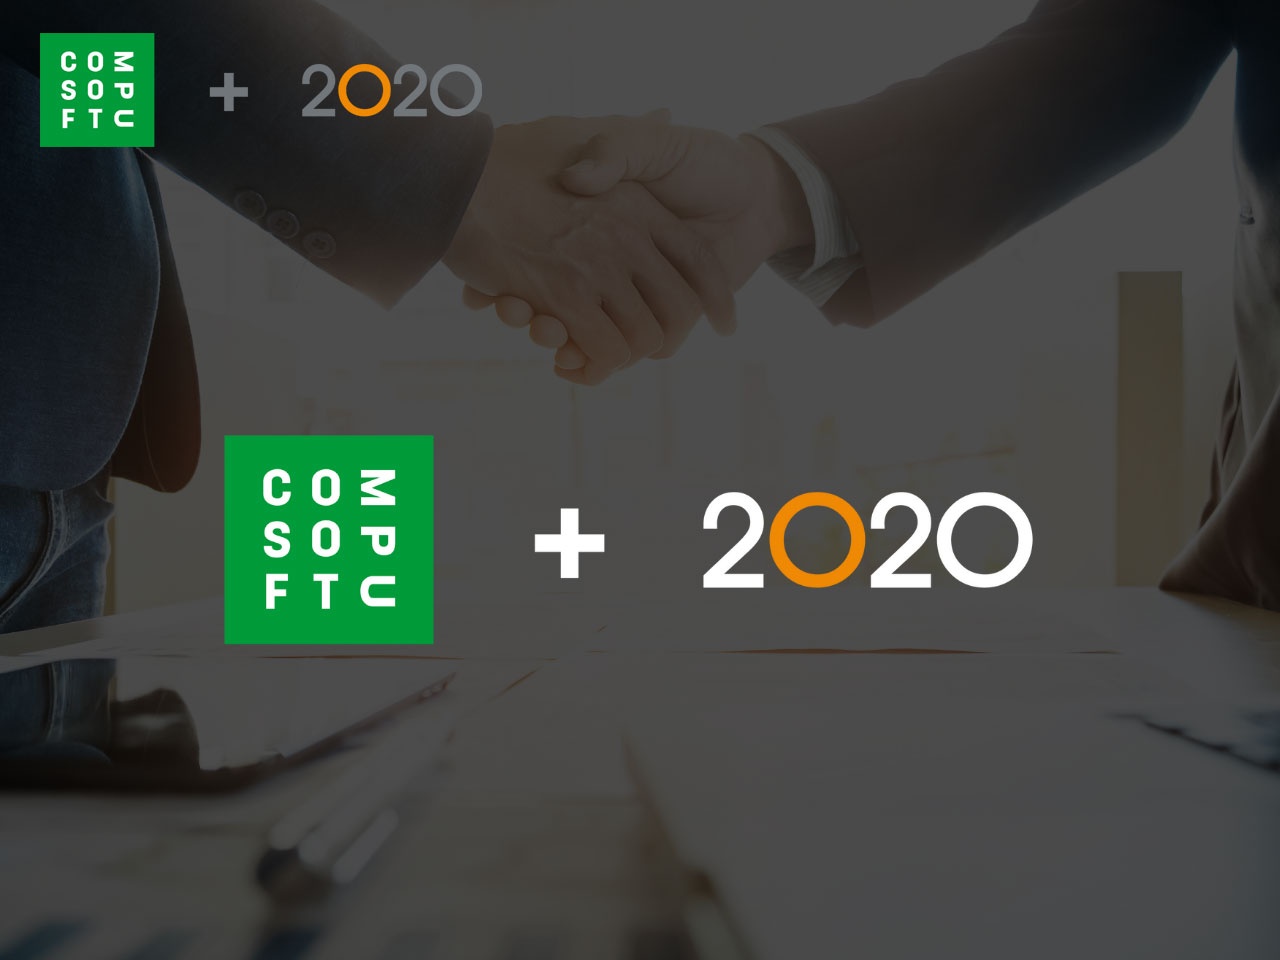 Compusoft et 2020 finalisent leur fusion pour créer un nouveau groupe leader mondial !